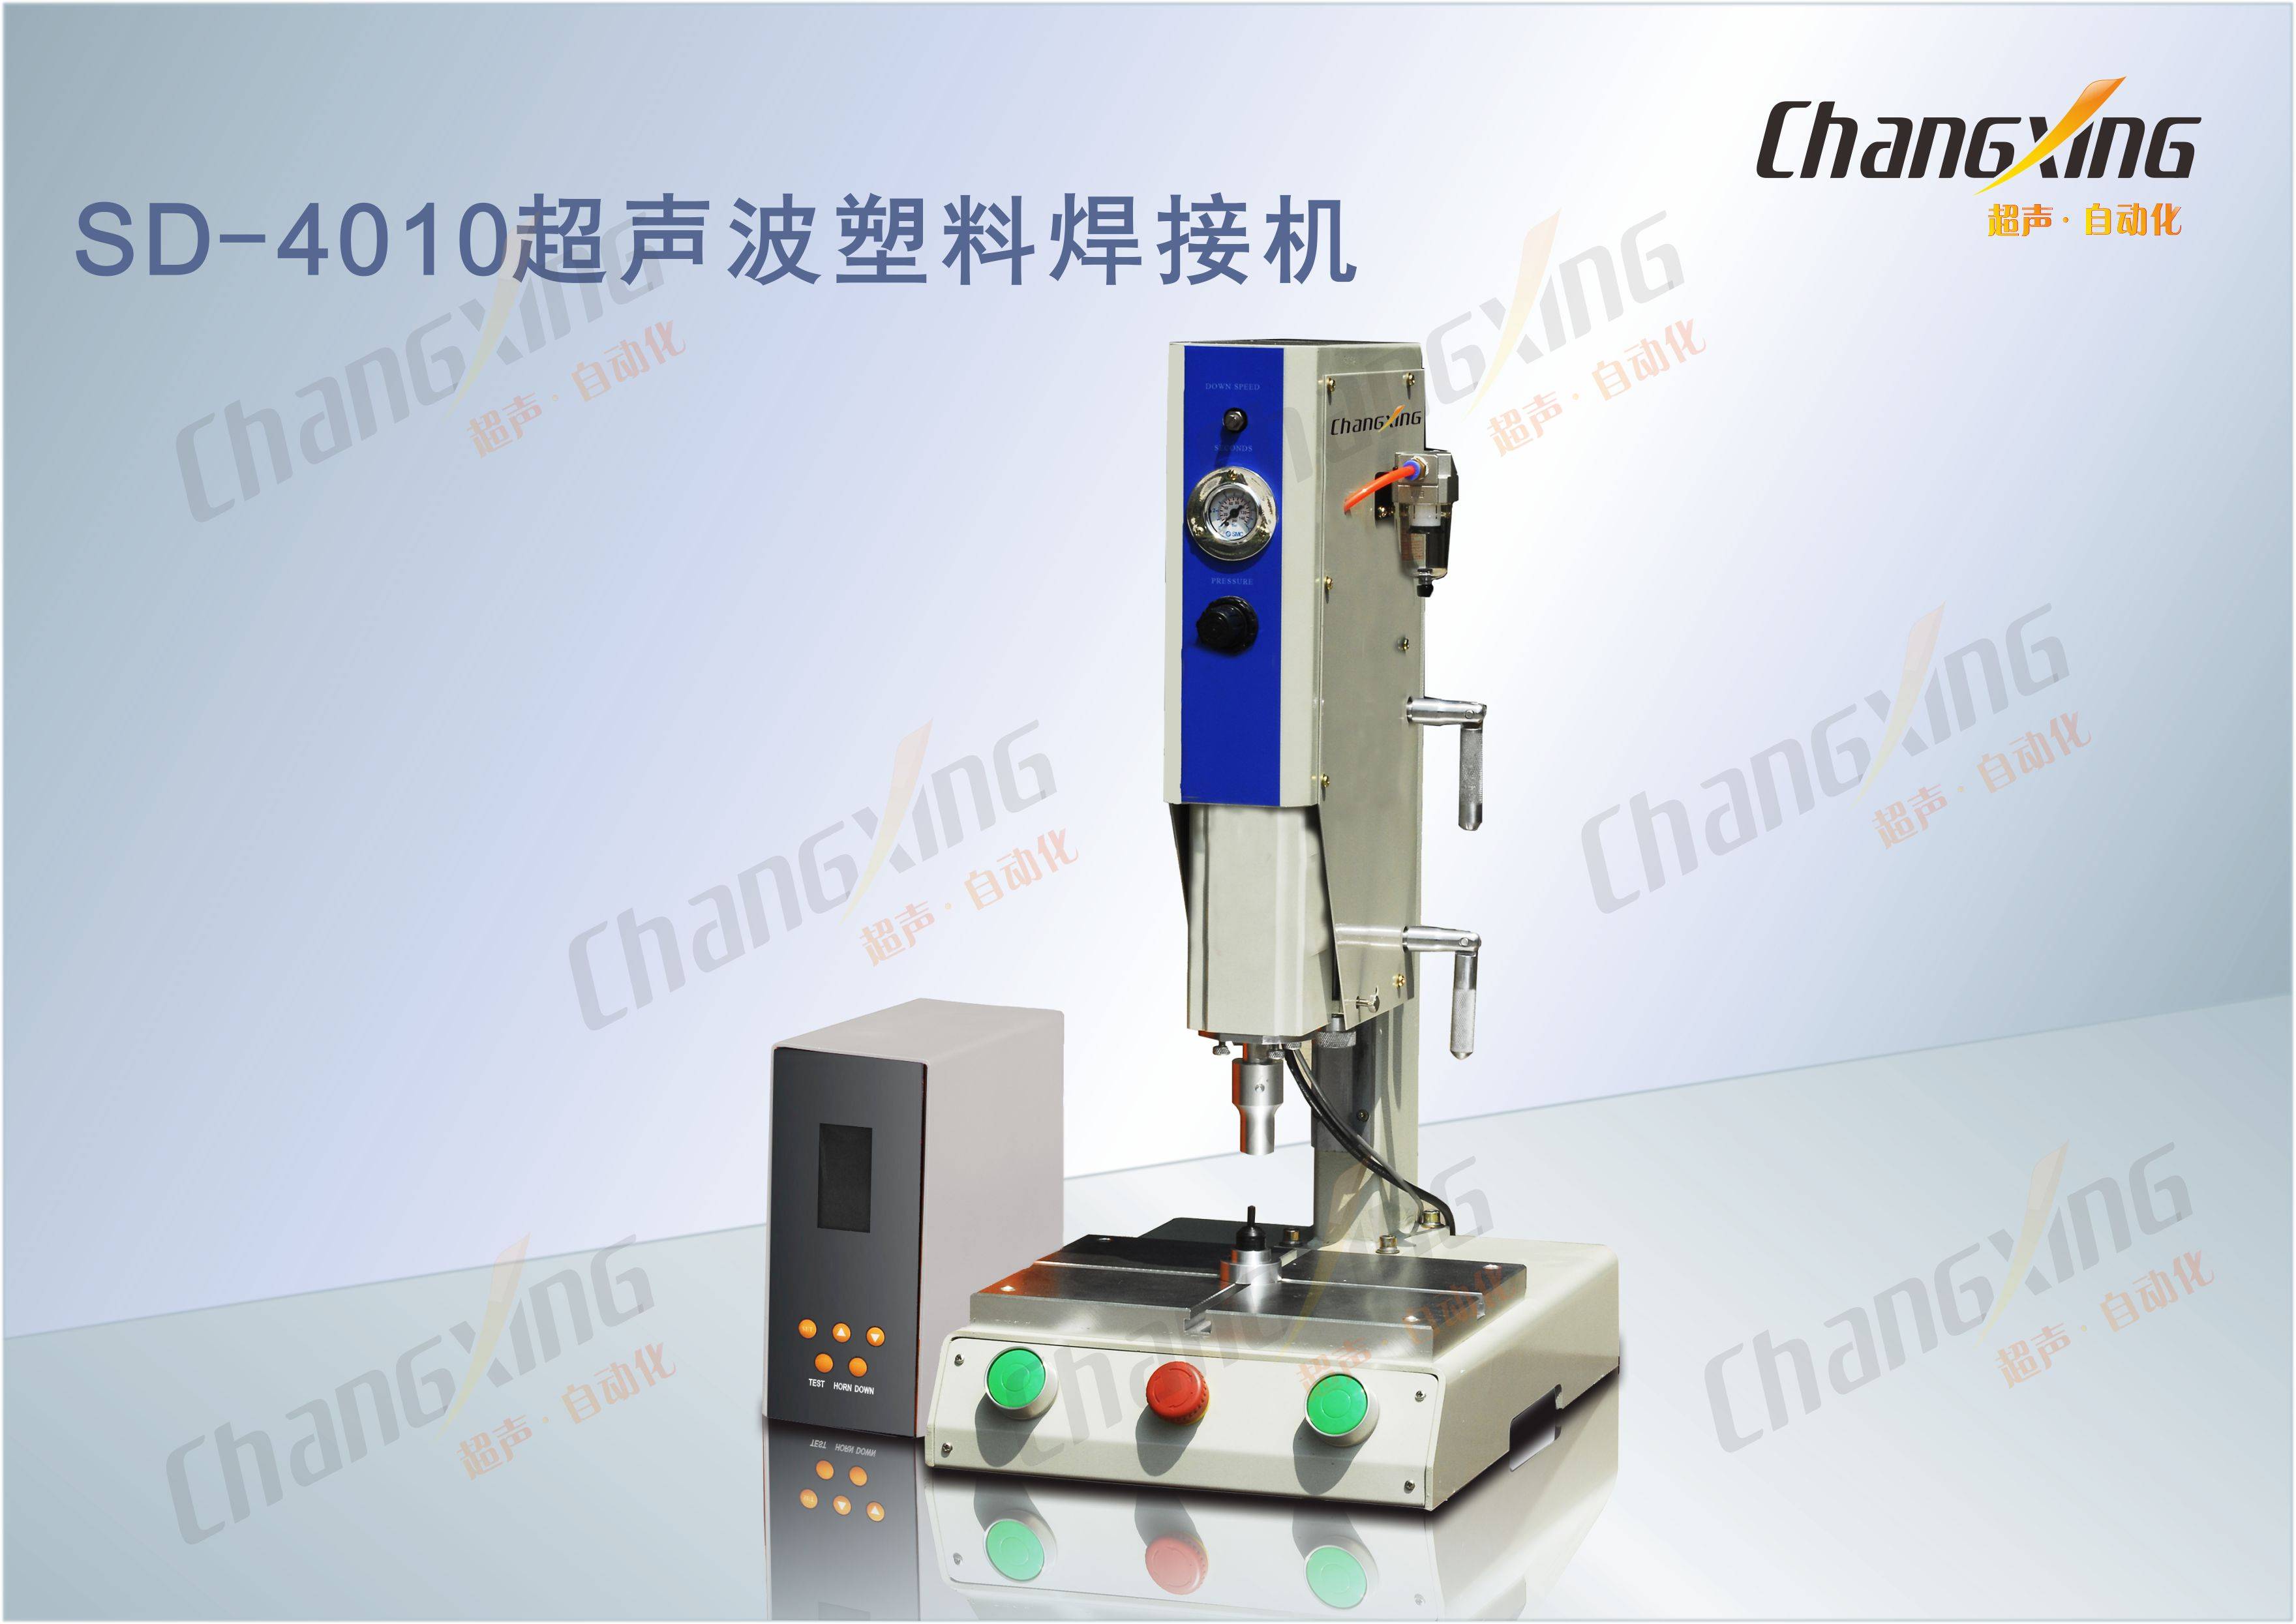 SD-4010超声波塑料焊接机(1)